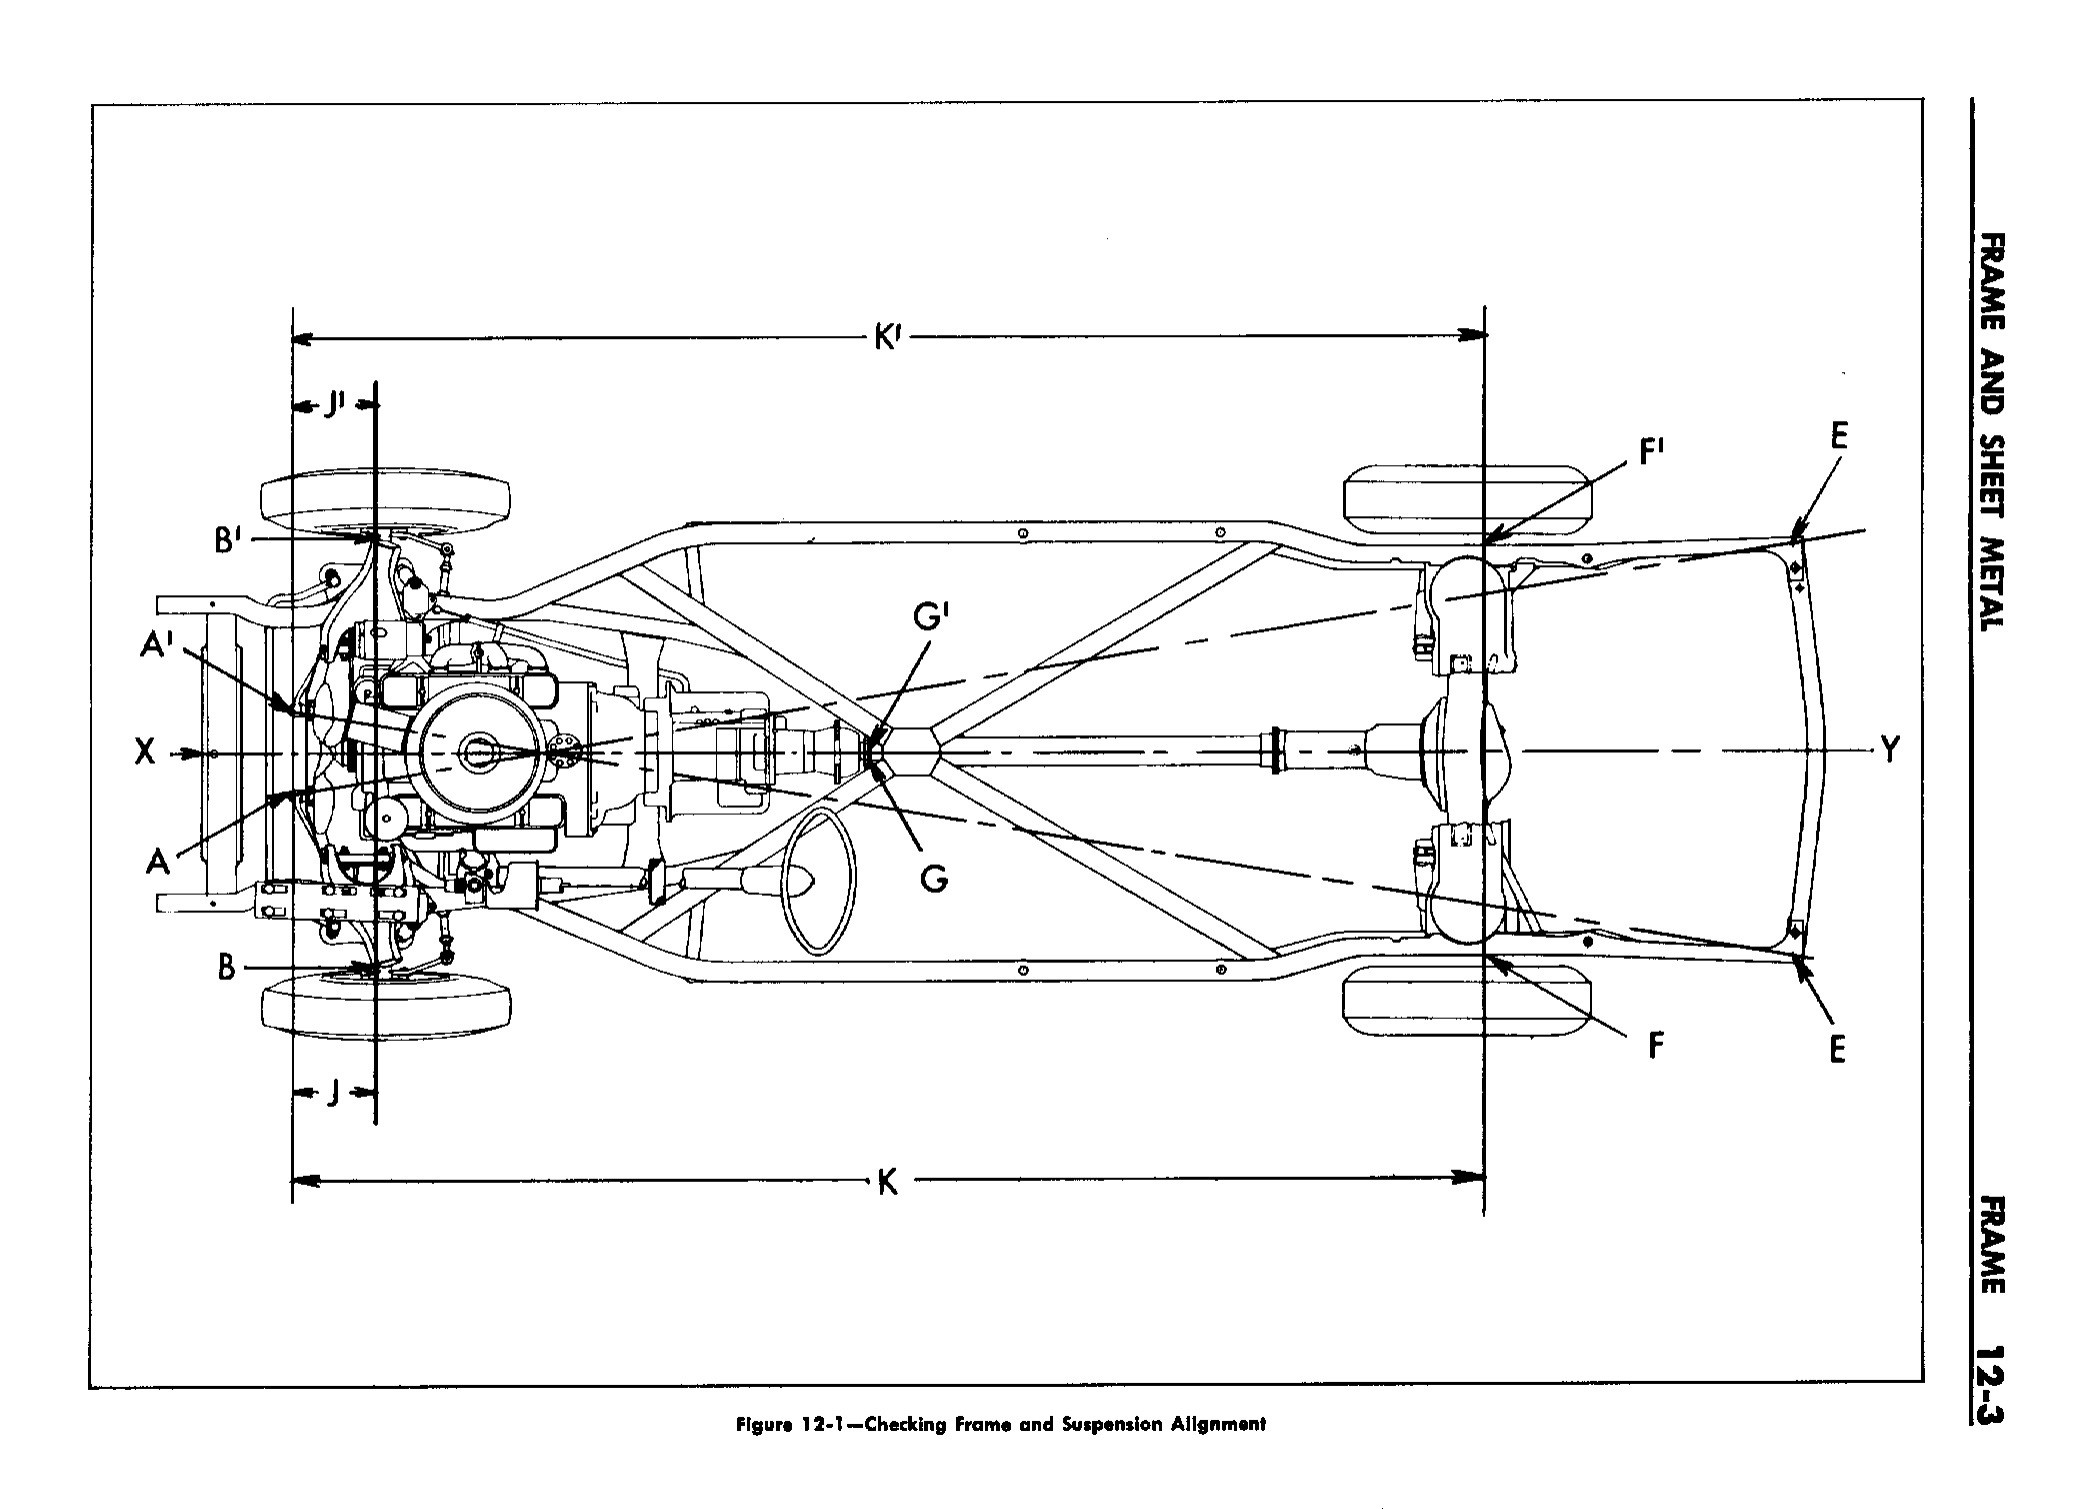 n_13 1958 Buick Shop Manual - Frame & Sheet Metal_3.jpg